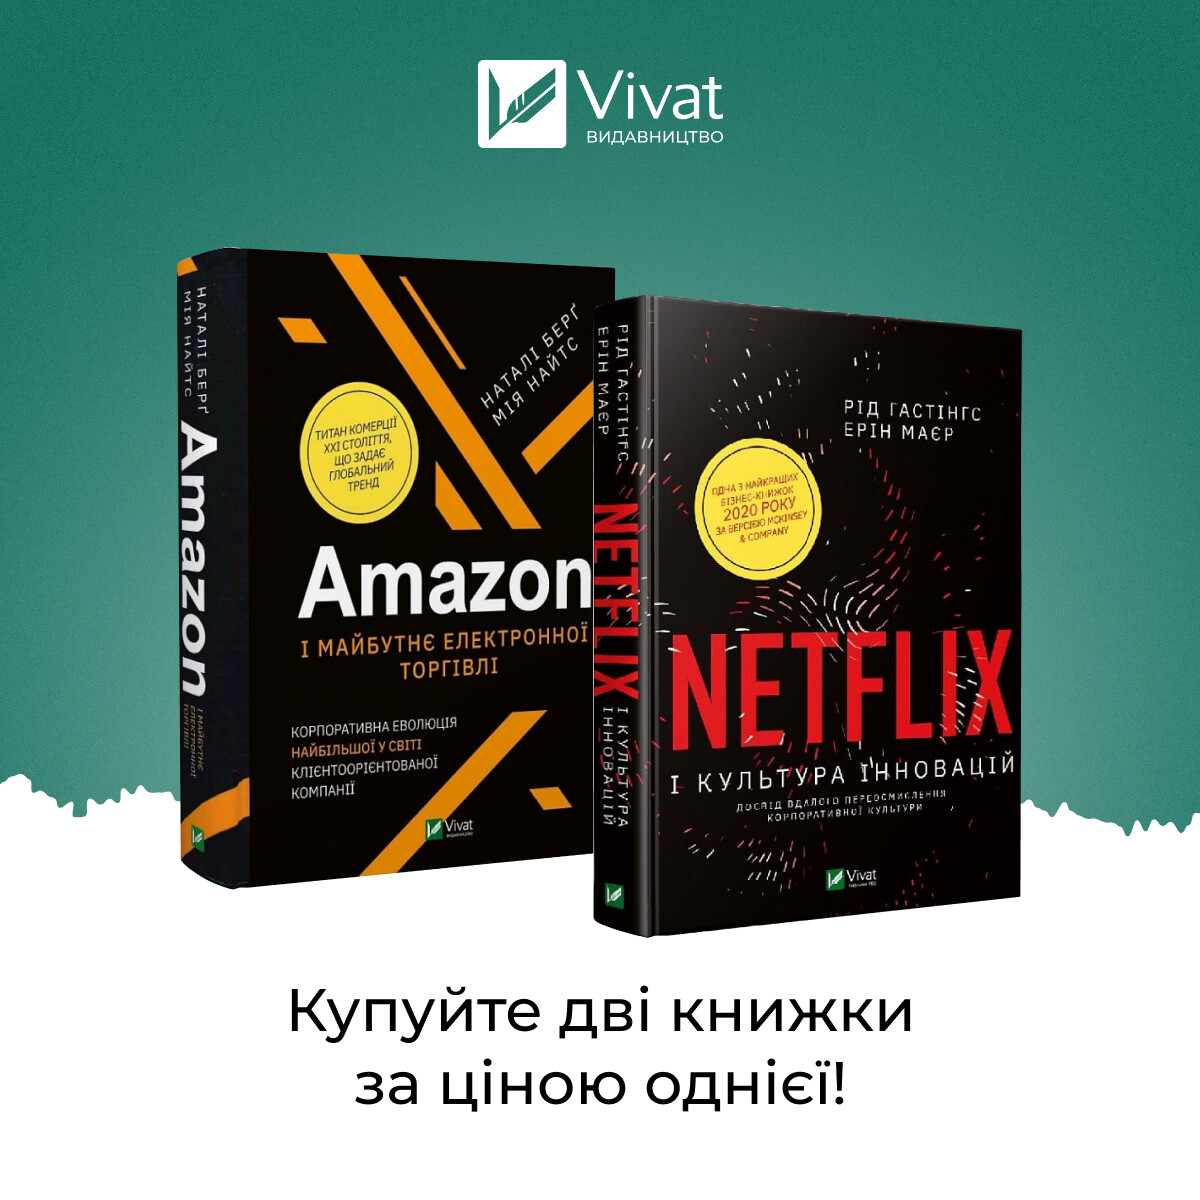 Комплект «Amazon і майбутнє електронної торгівлі + Netflix і культура інновацій» - Vivat